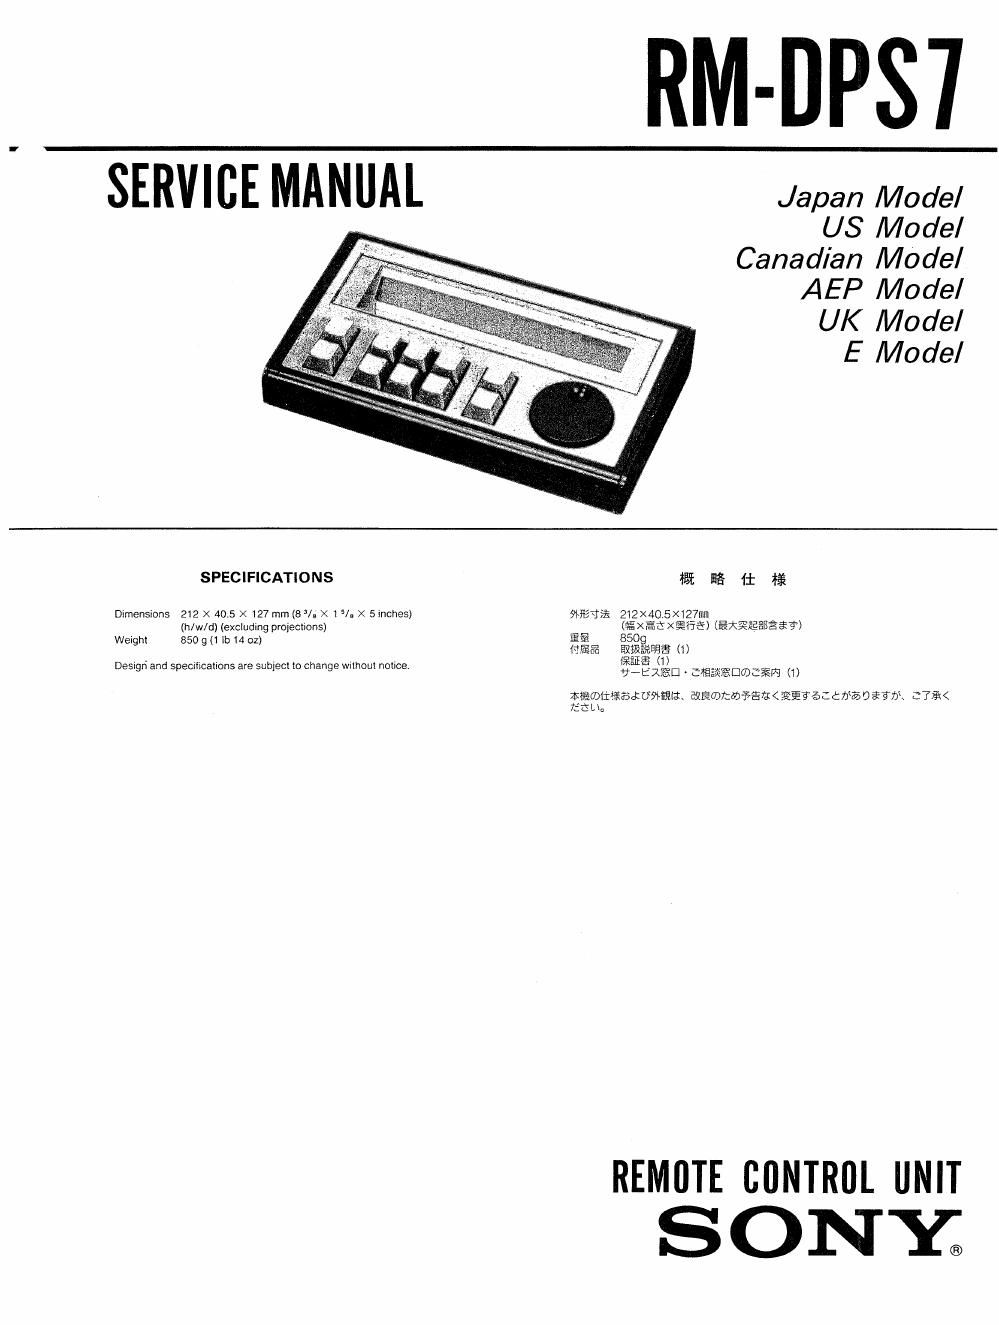 sony rm dps 7 service manual